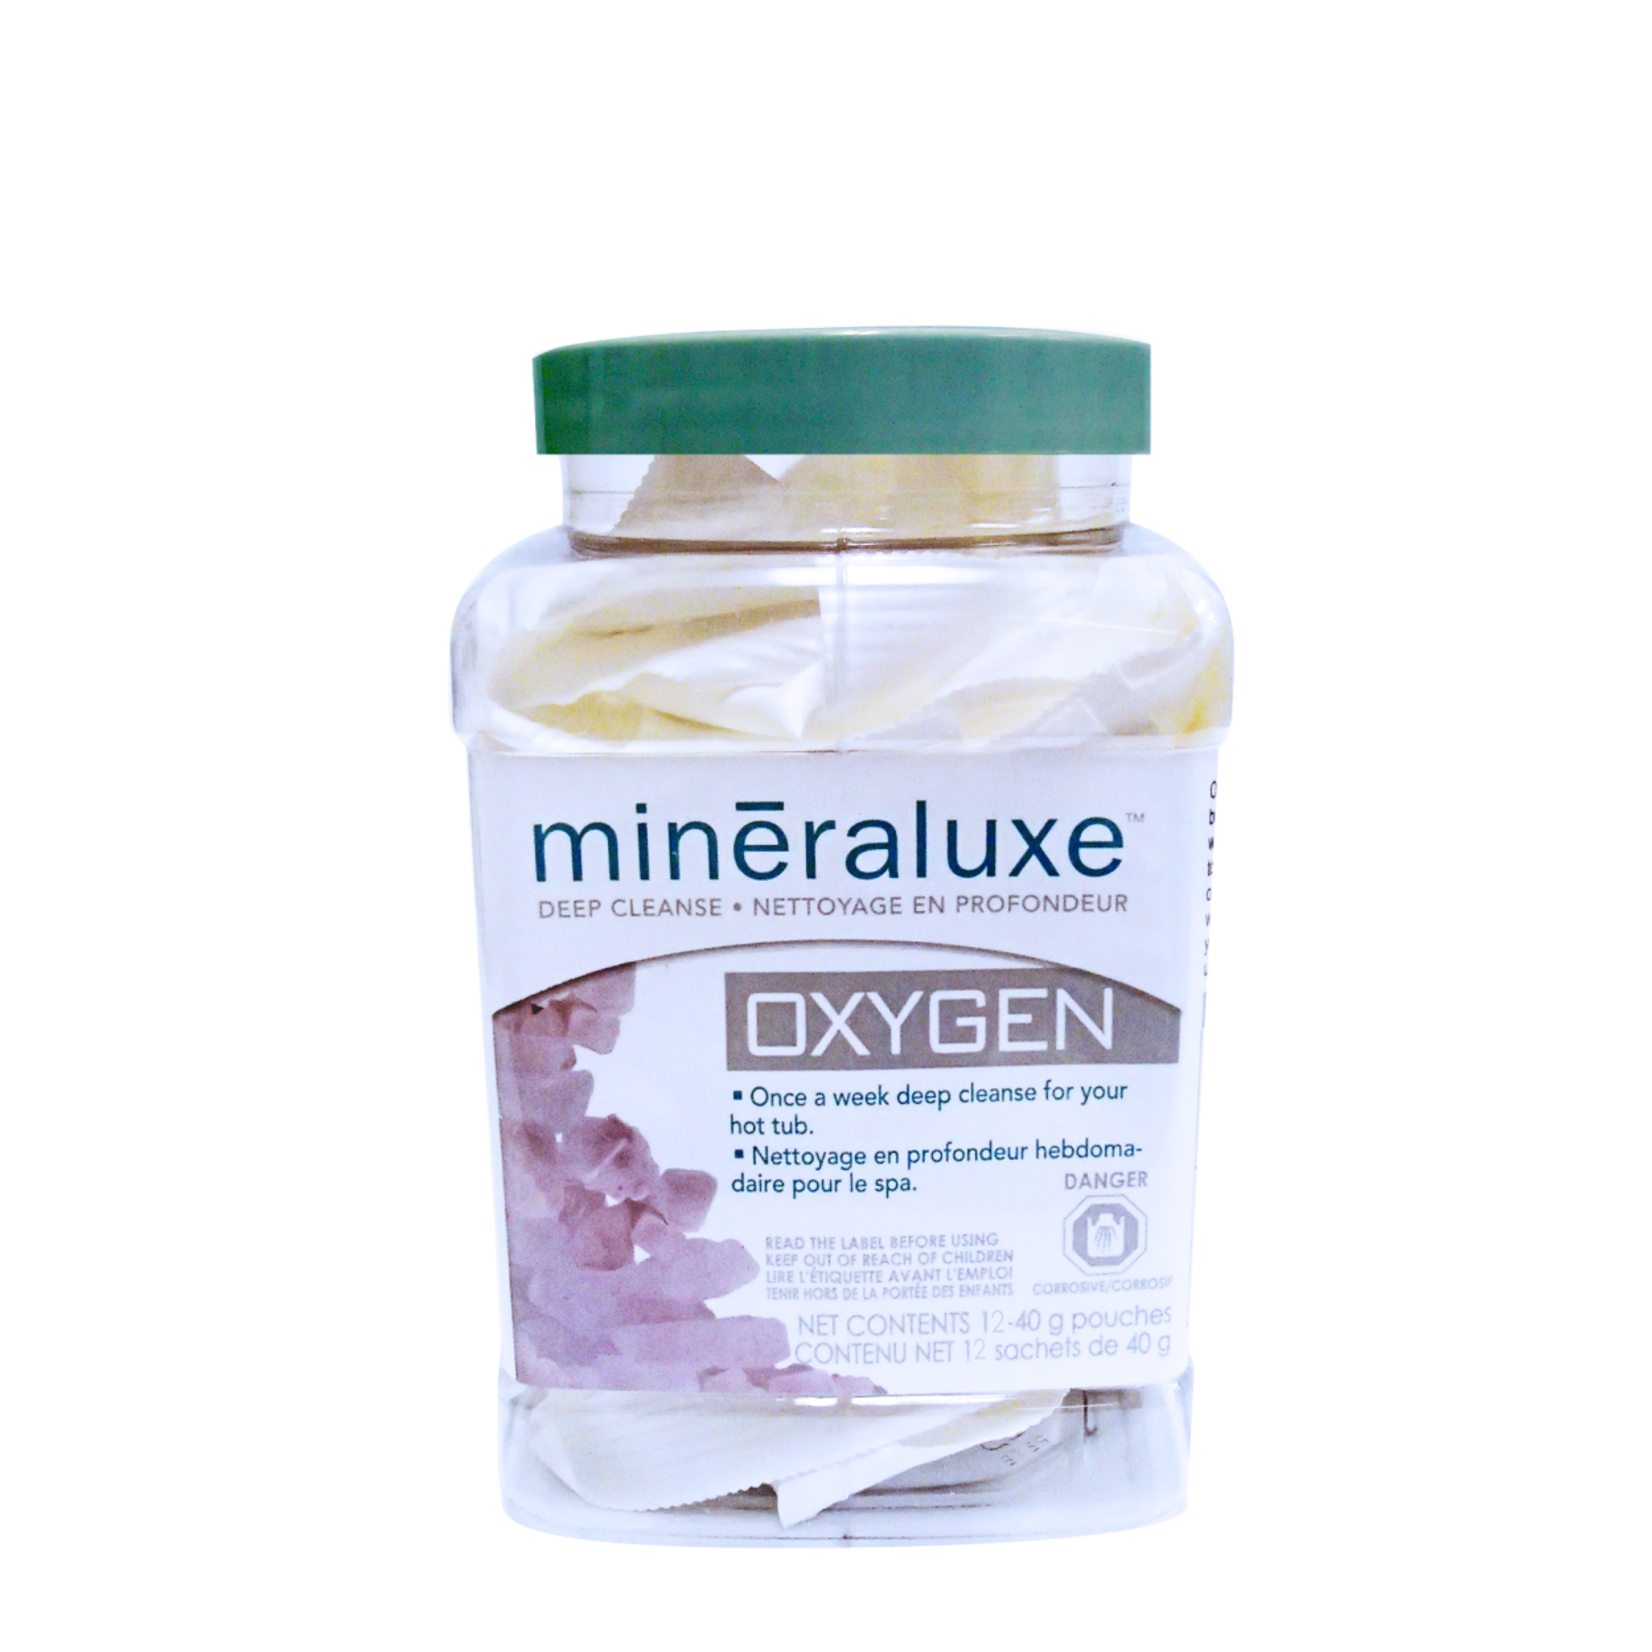 Mineraluxe Oxygen 12 x 40 g (480 g)